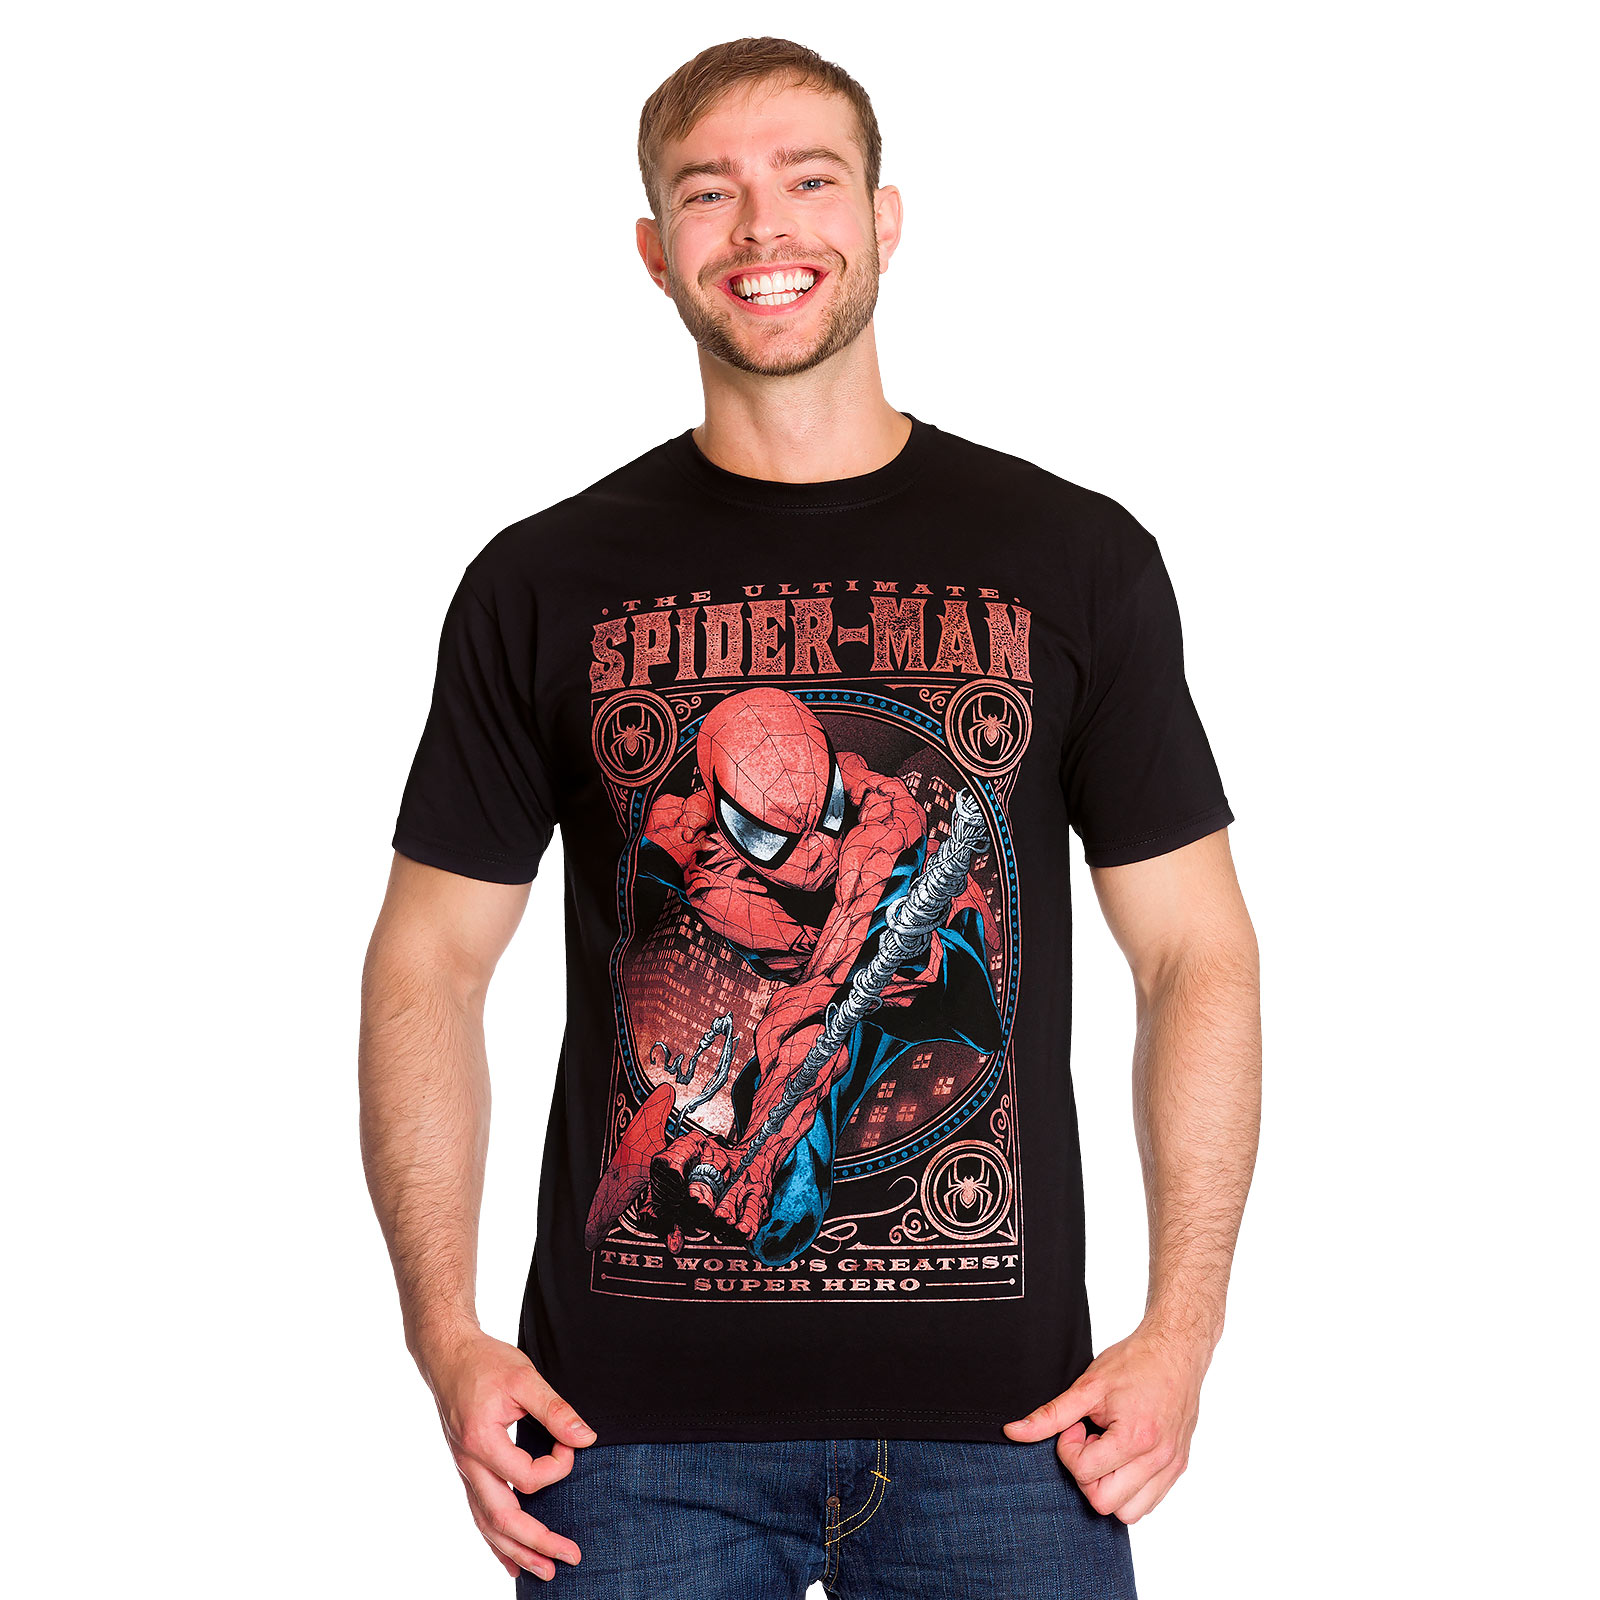 Spider-Man - Greatest Super Hero T-Shirt black